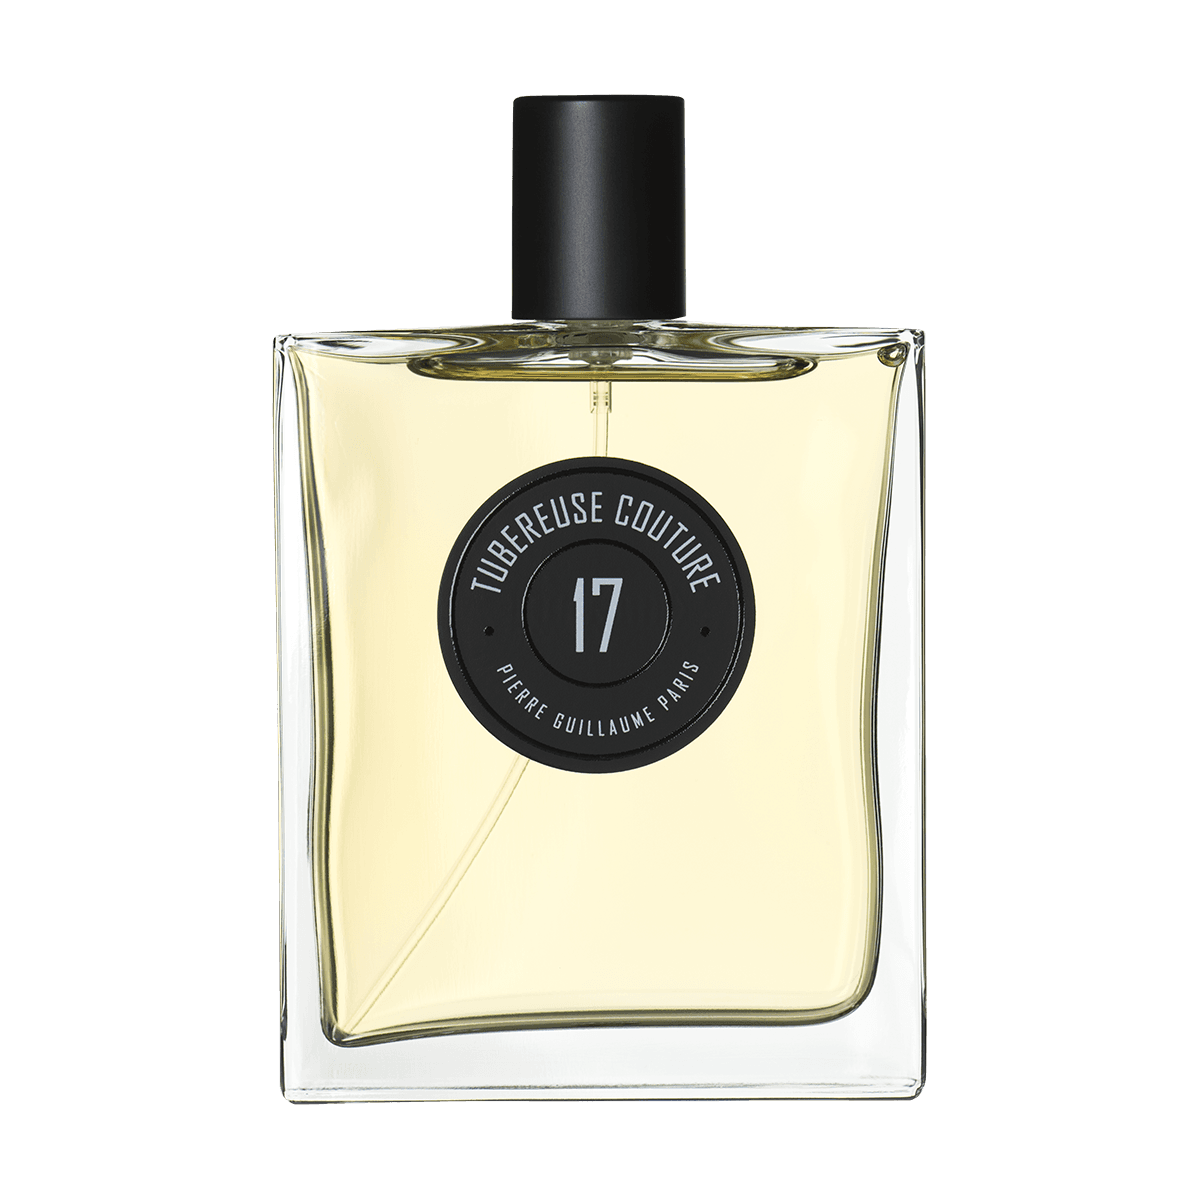 Pierre Guillaume Paris - Tubereuse Couture eau de parfum 100 ml | Perfume Lounge